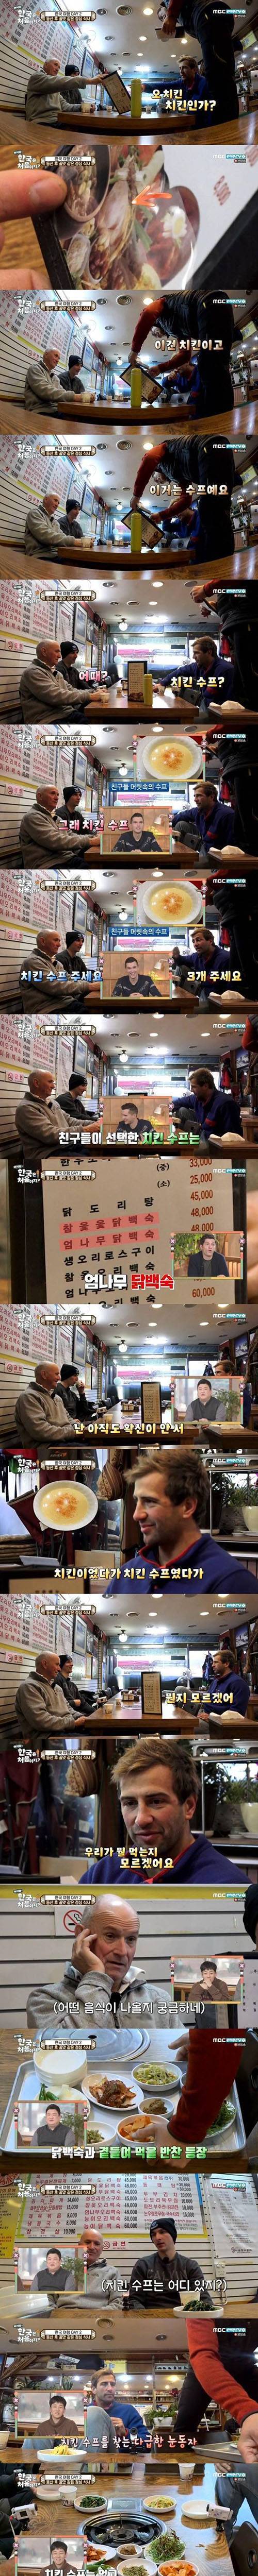 한국에서 치킨 수프를 시킨 영국인들.jpg